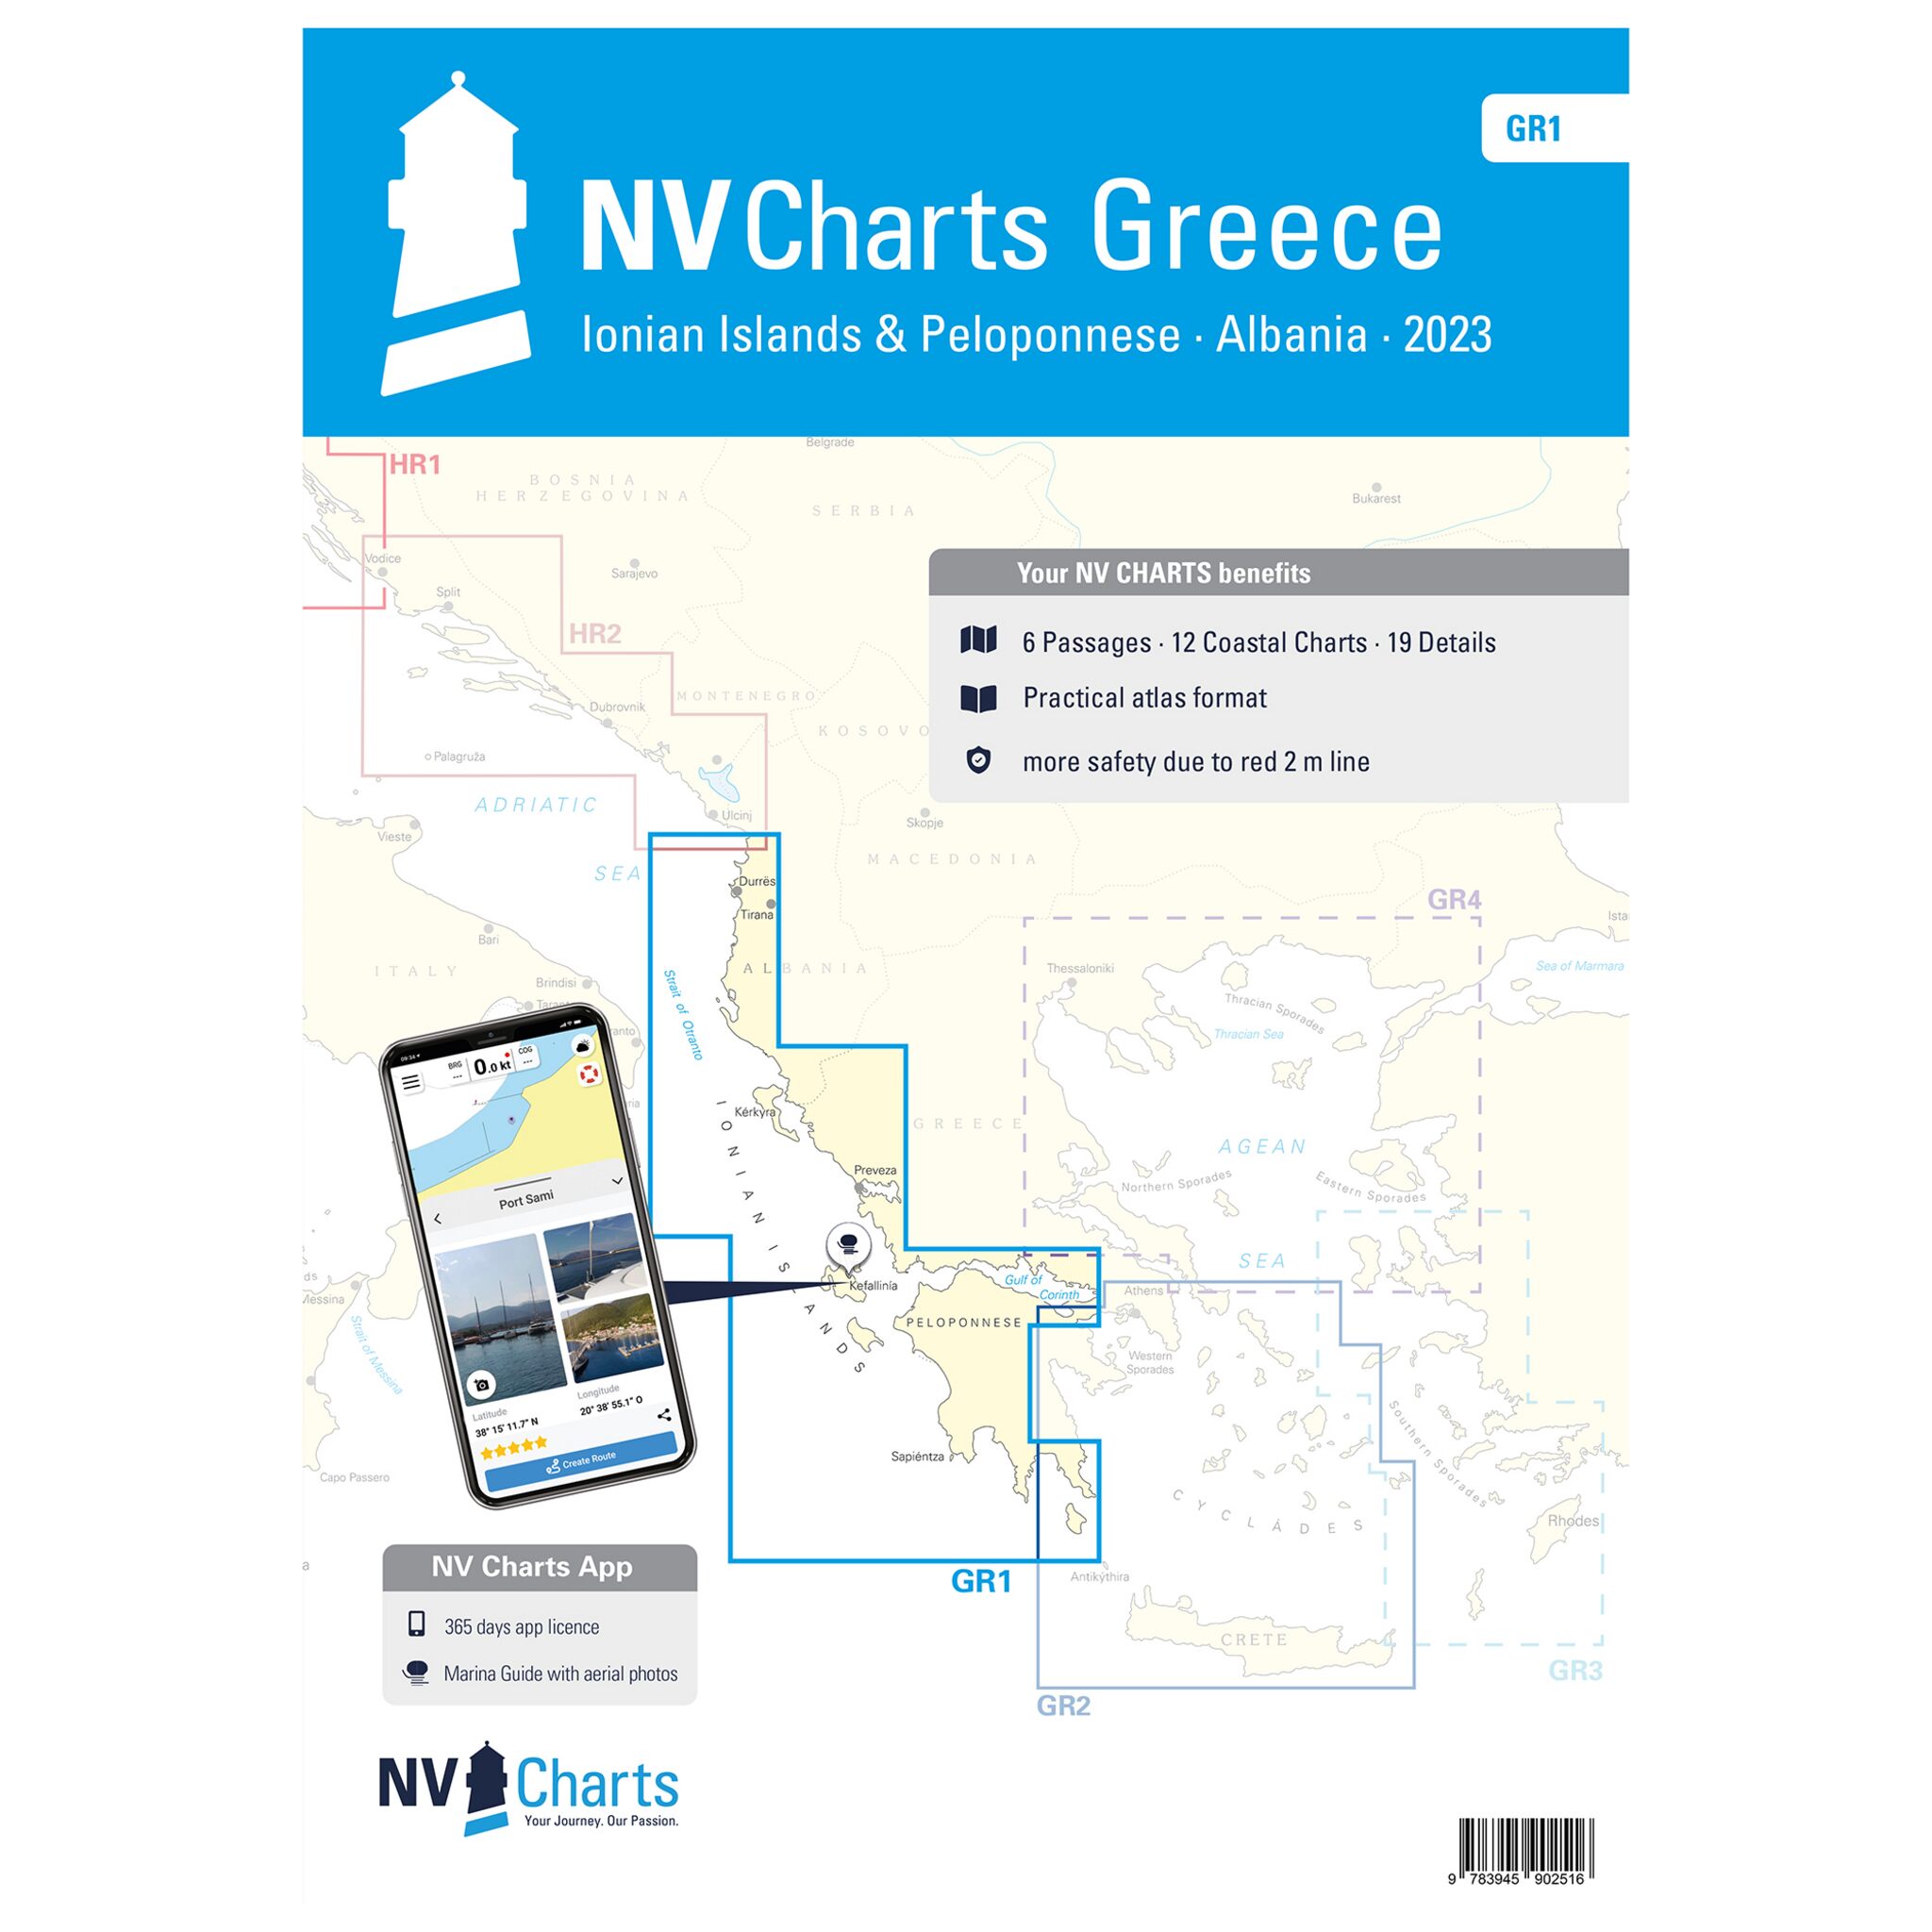 NV Atlas Griechenland - Ionian Islands and Peleponnese - GR 1